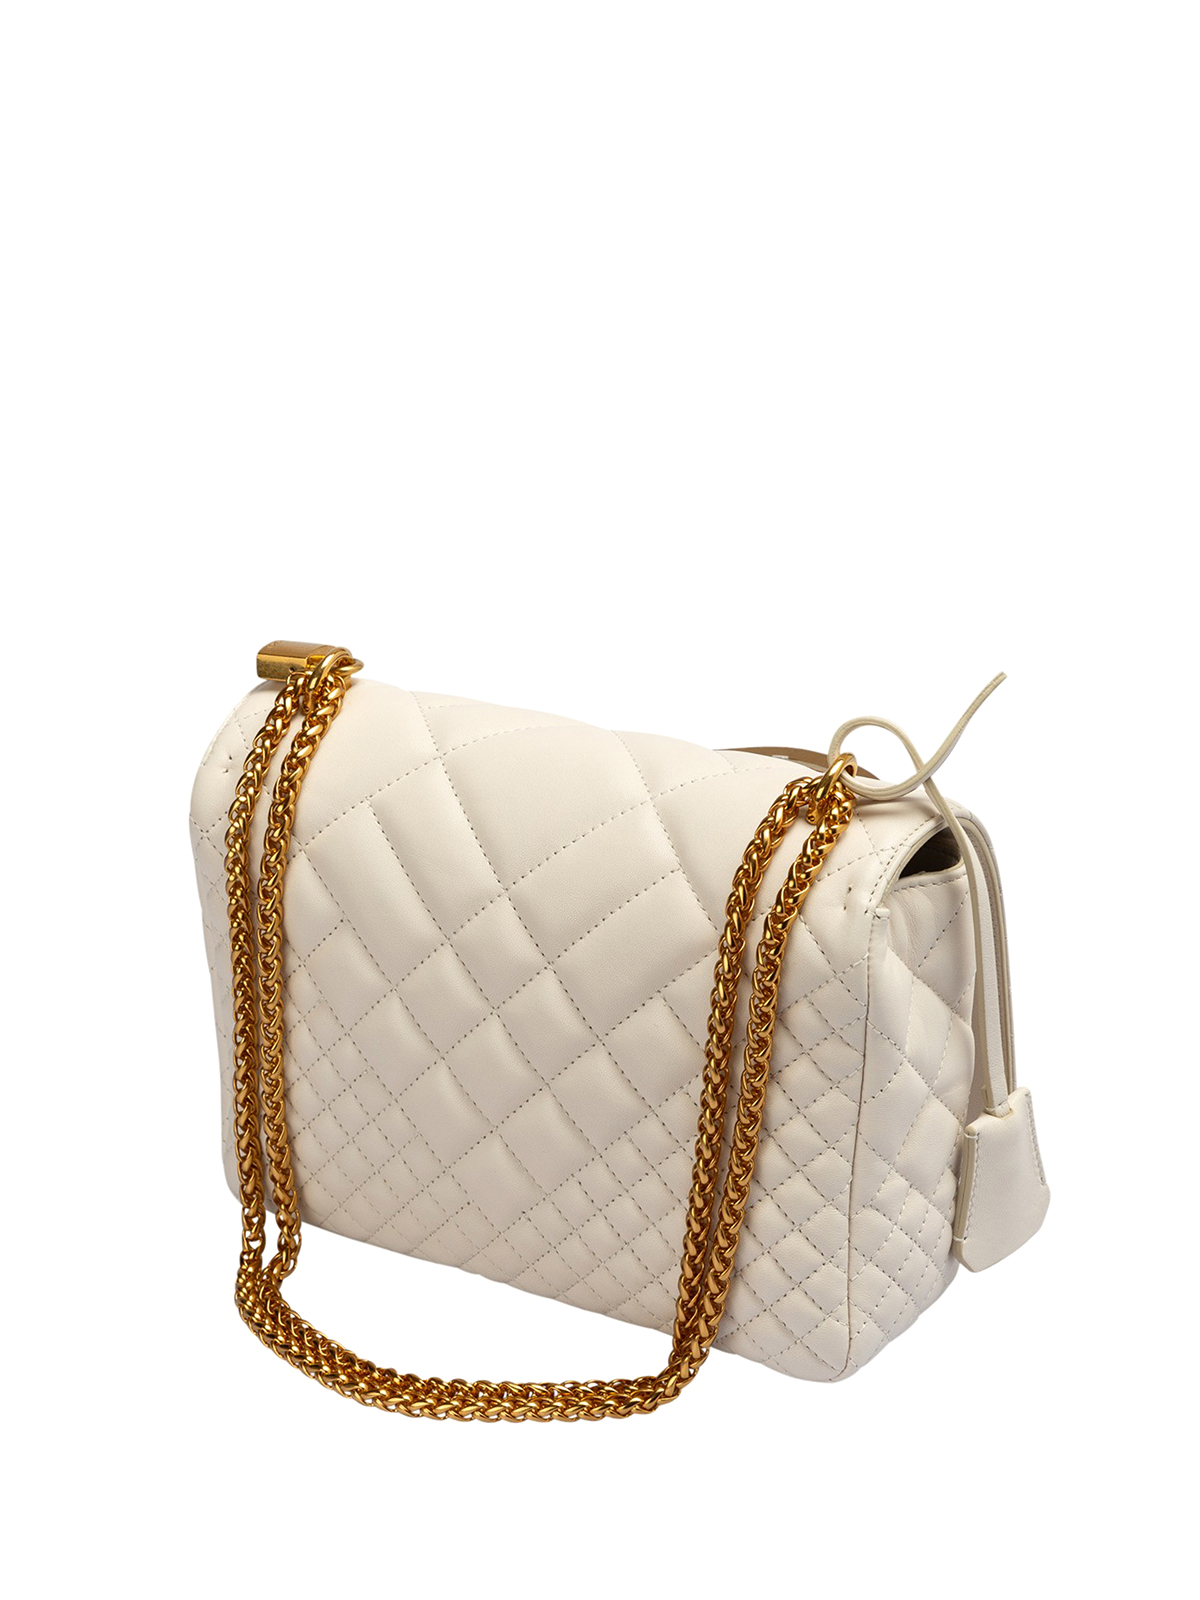 Versace Shoulder Bag in White